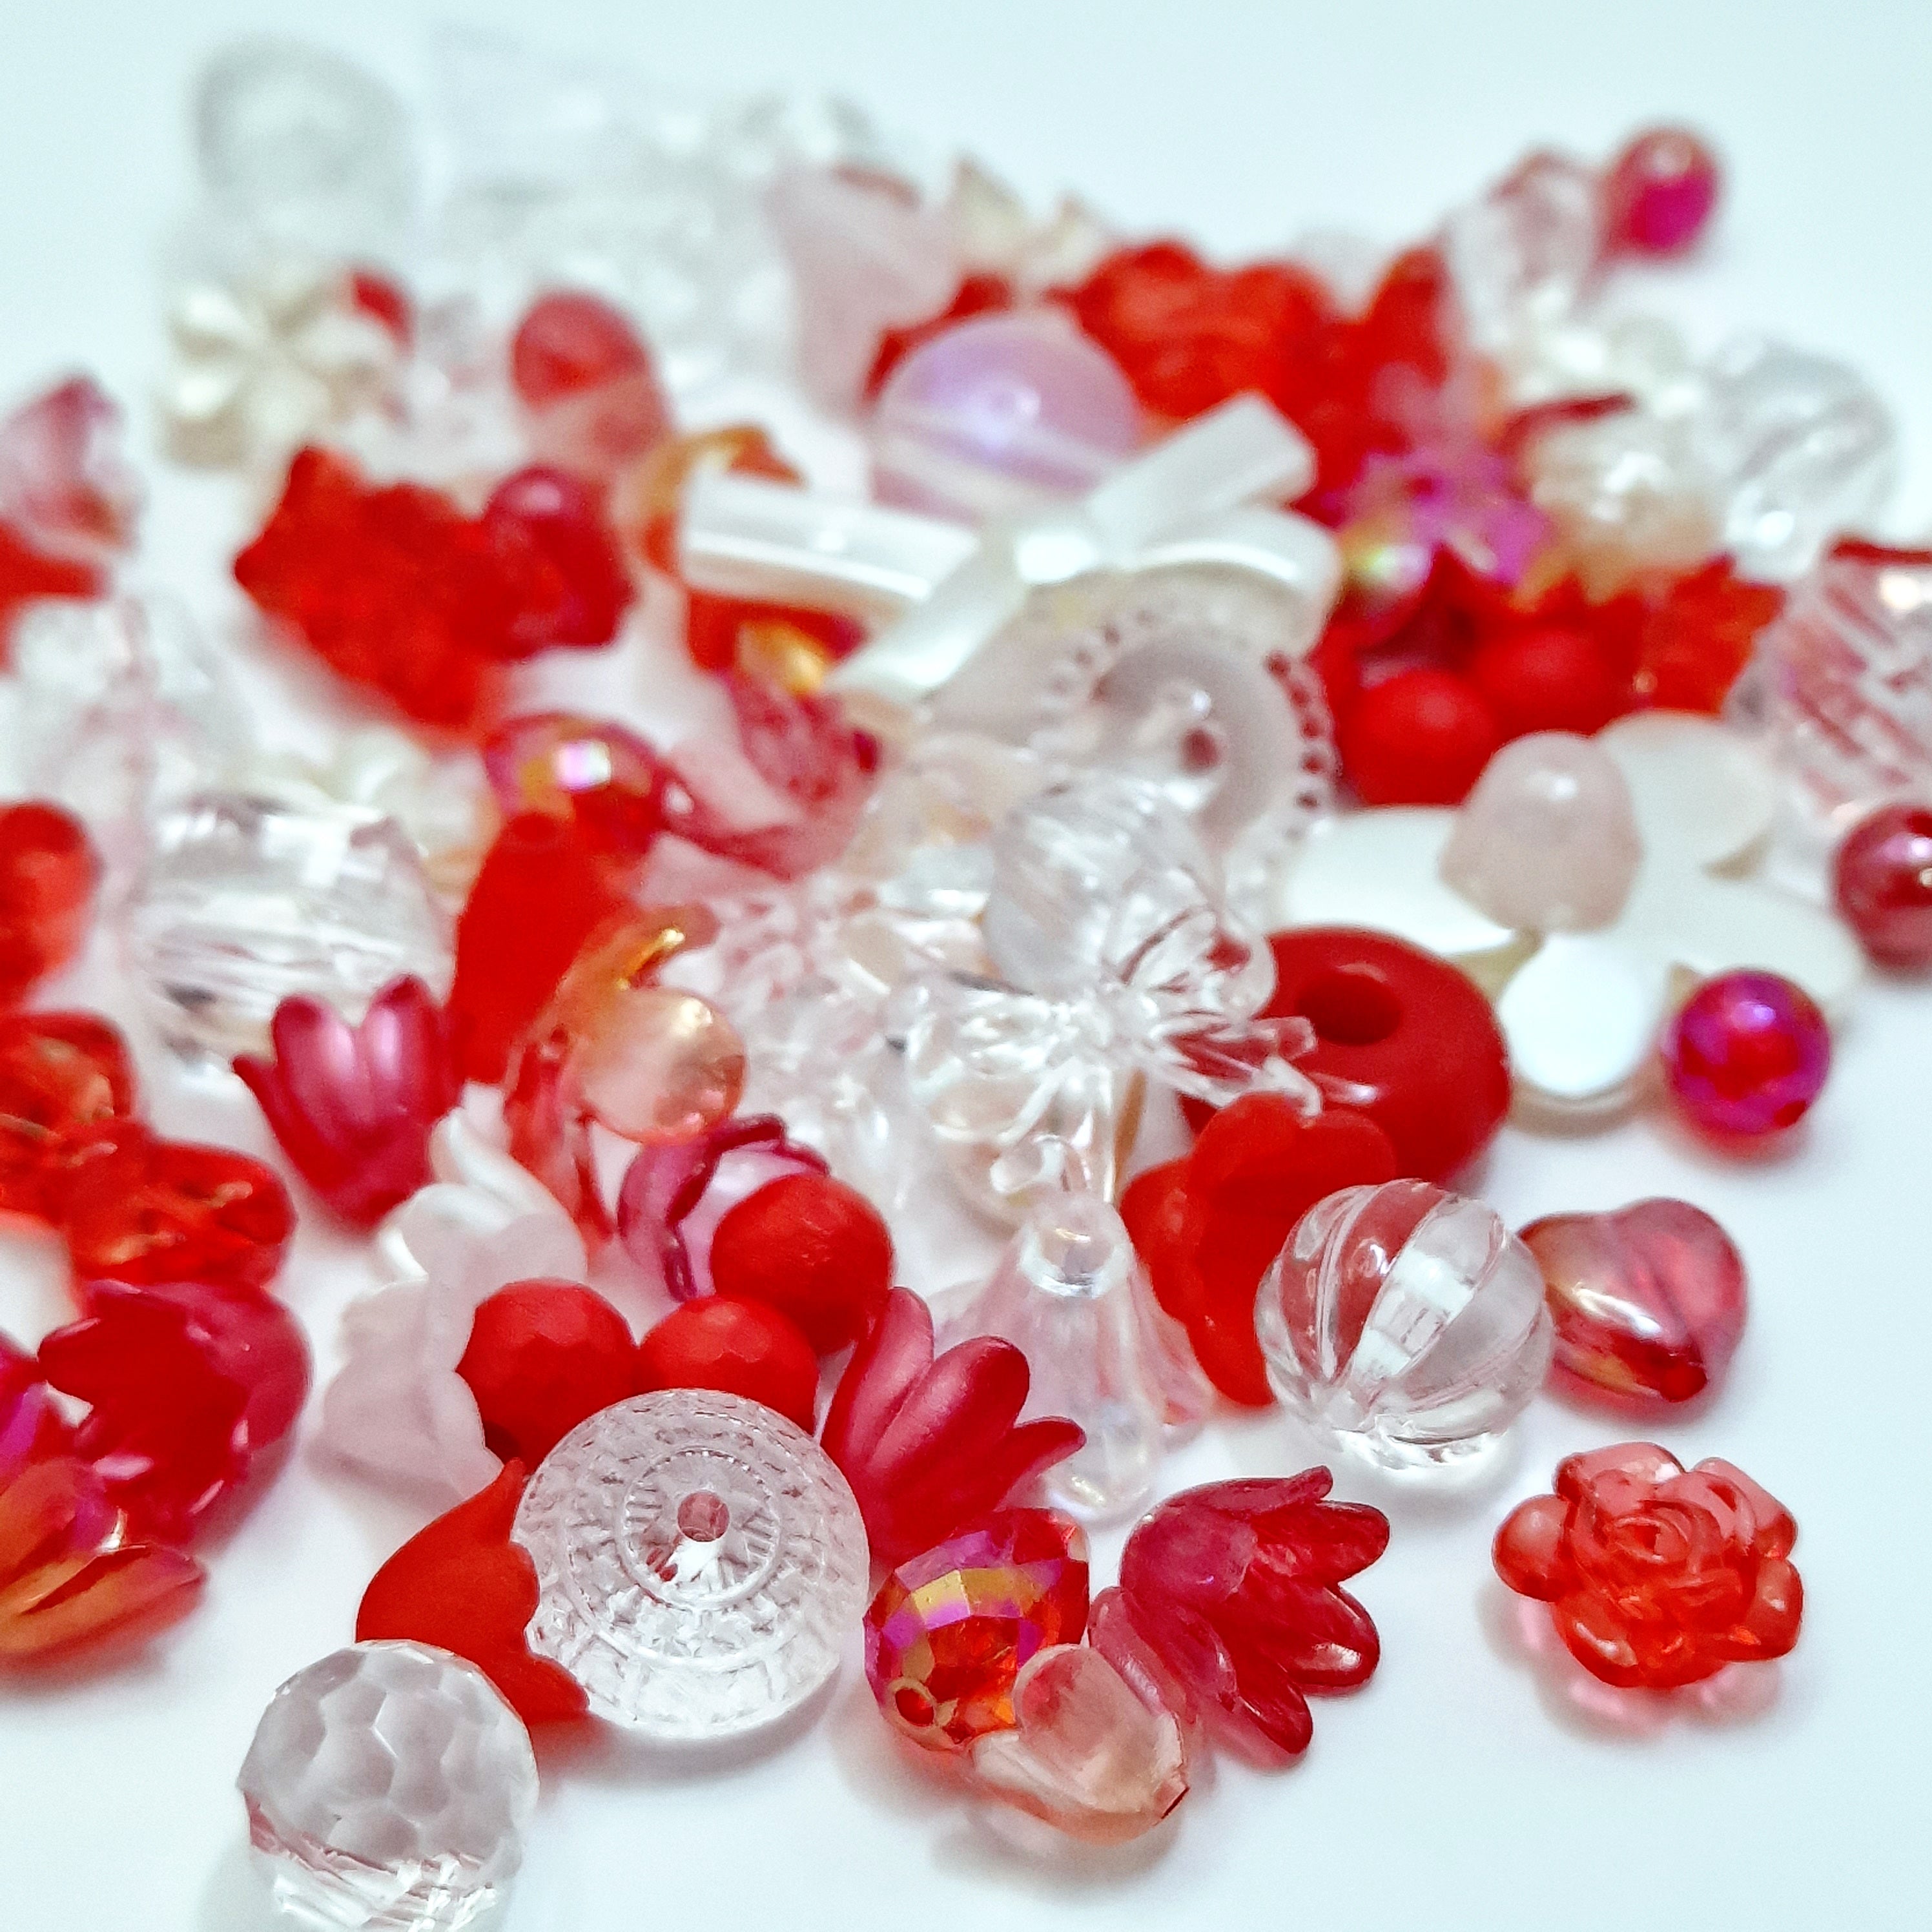 MajorCrafts 50g Red Theme Mixed Shapes & Sizes Acrylic Beads